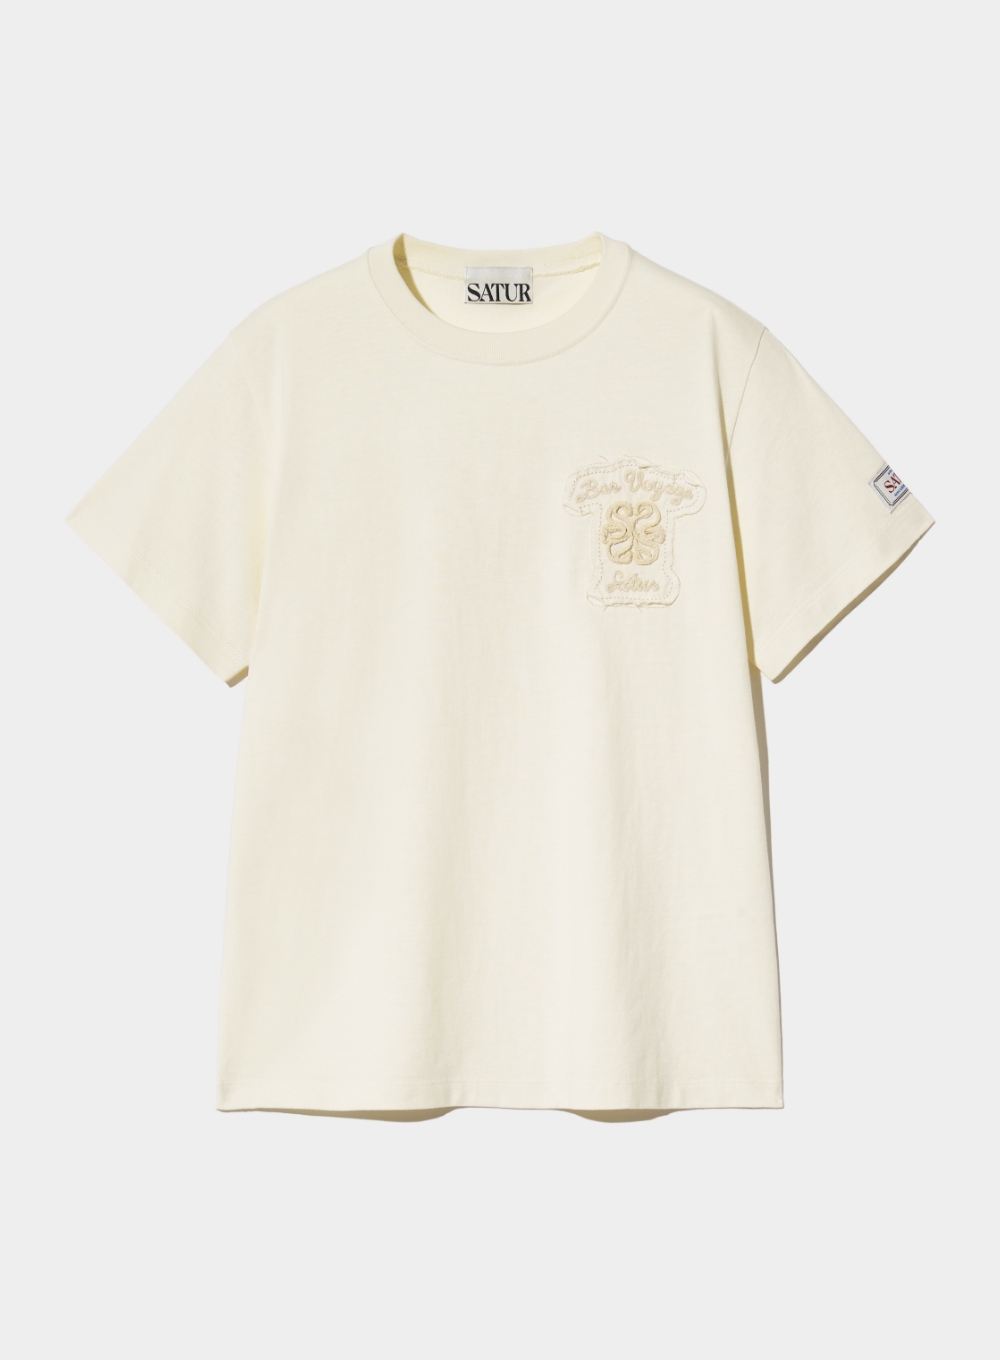 (W) Bon Voyage Raw-Cut Applique T-Shirt - Cream Ivory